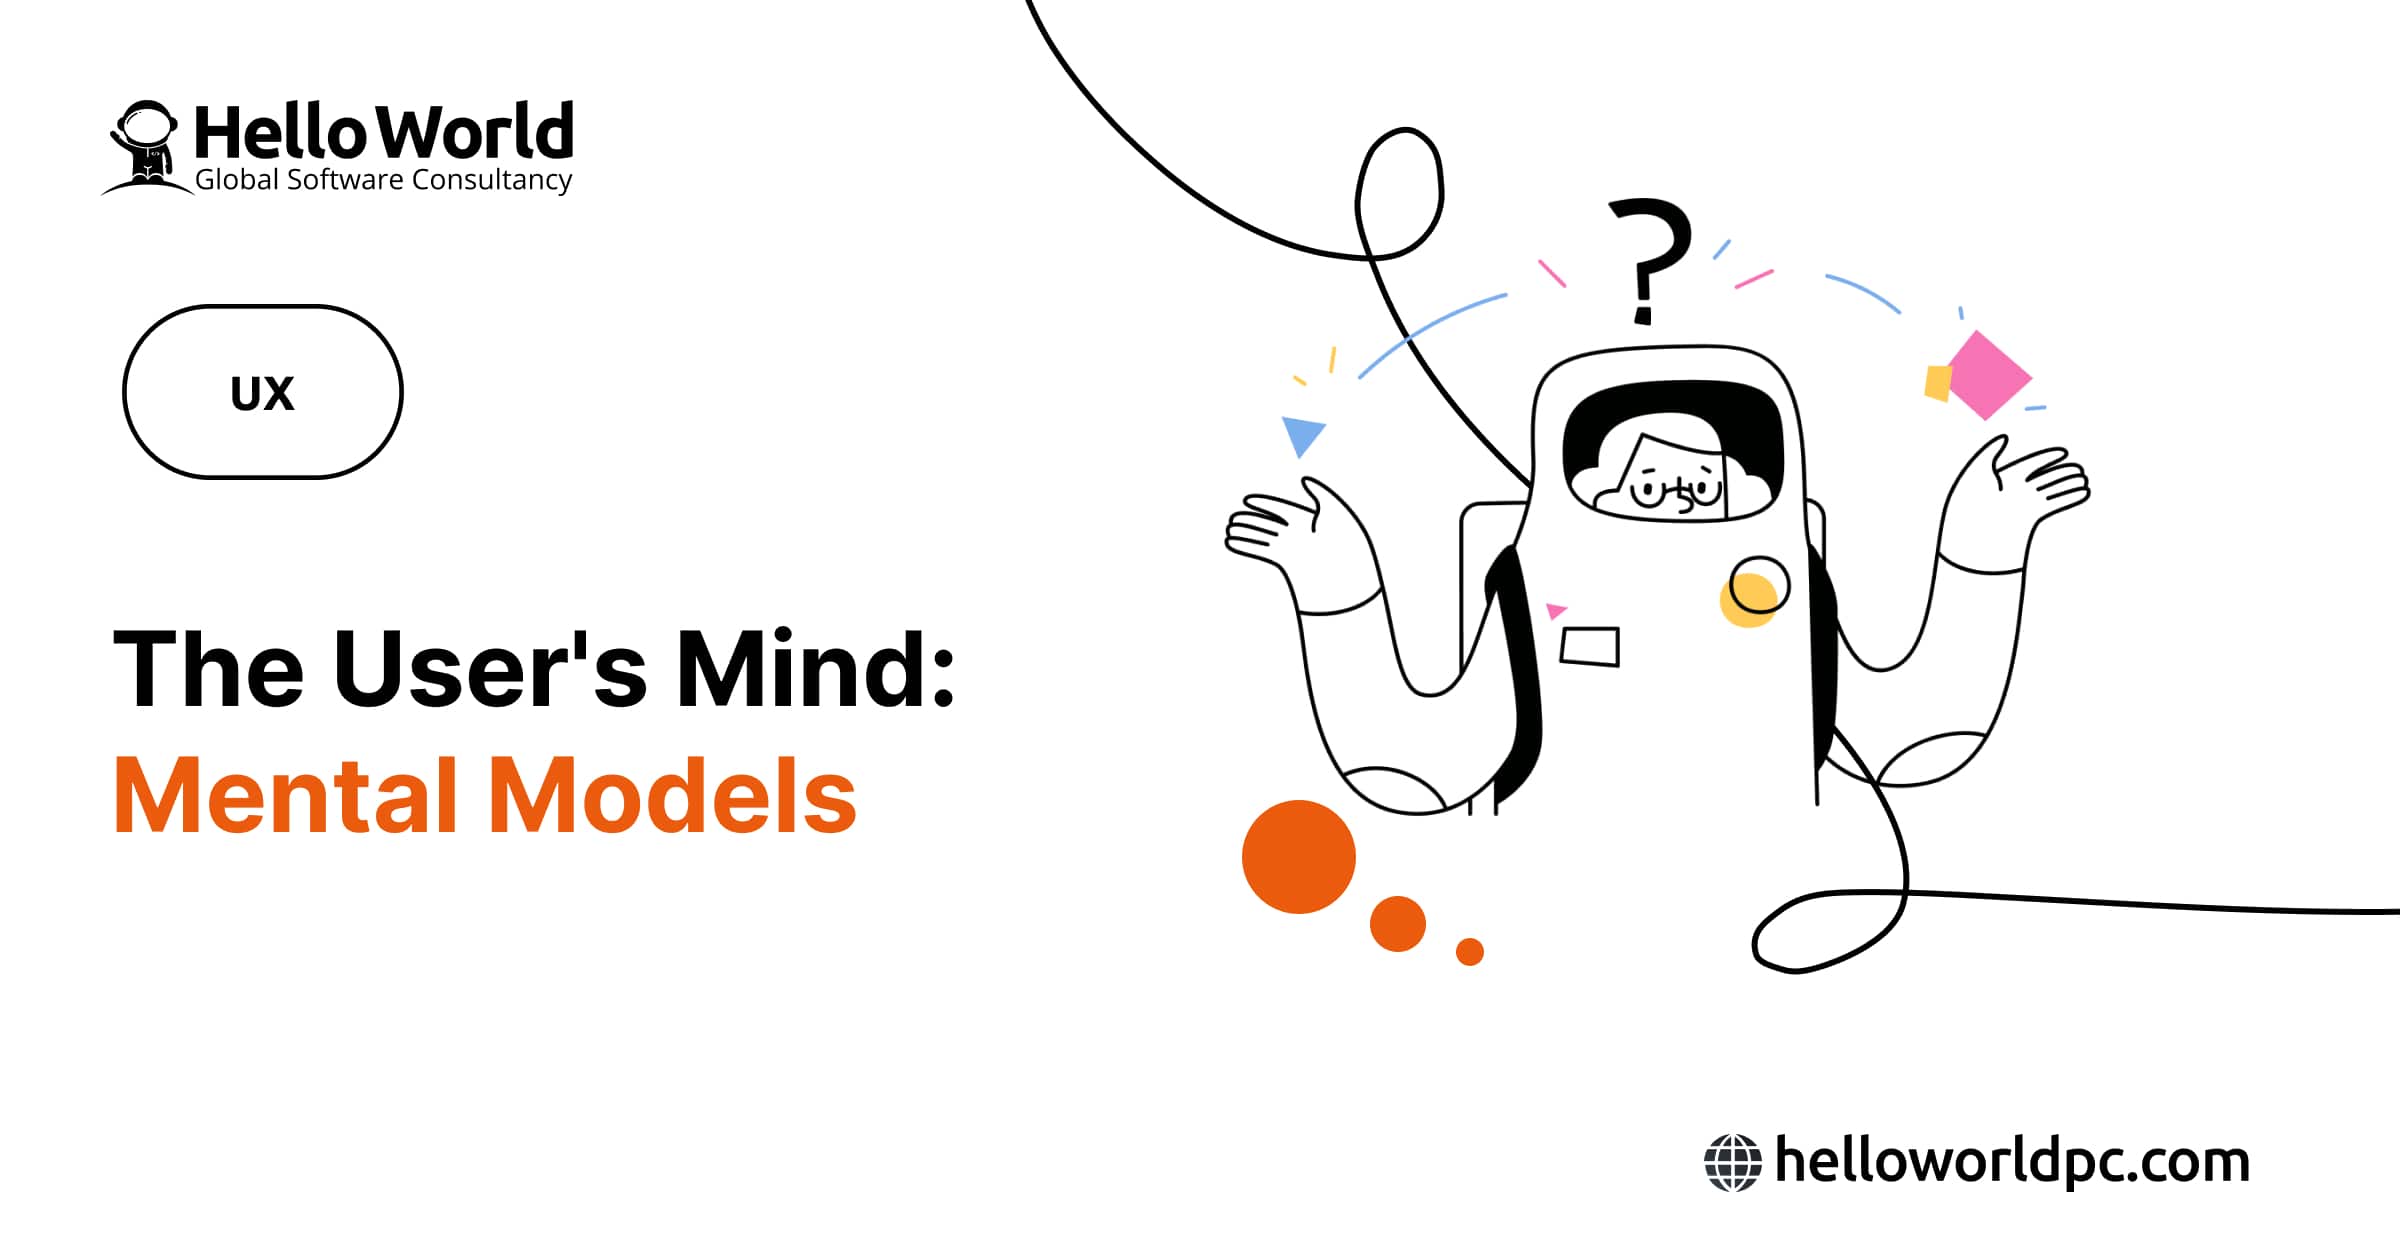 The User's Mind: Mental Models